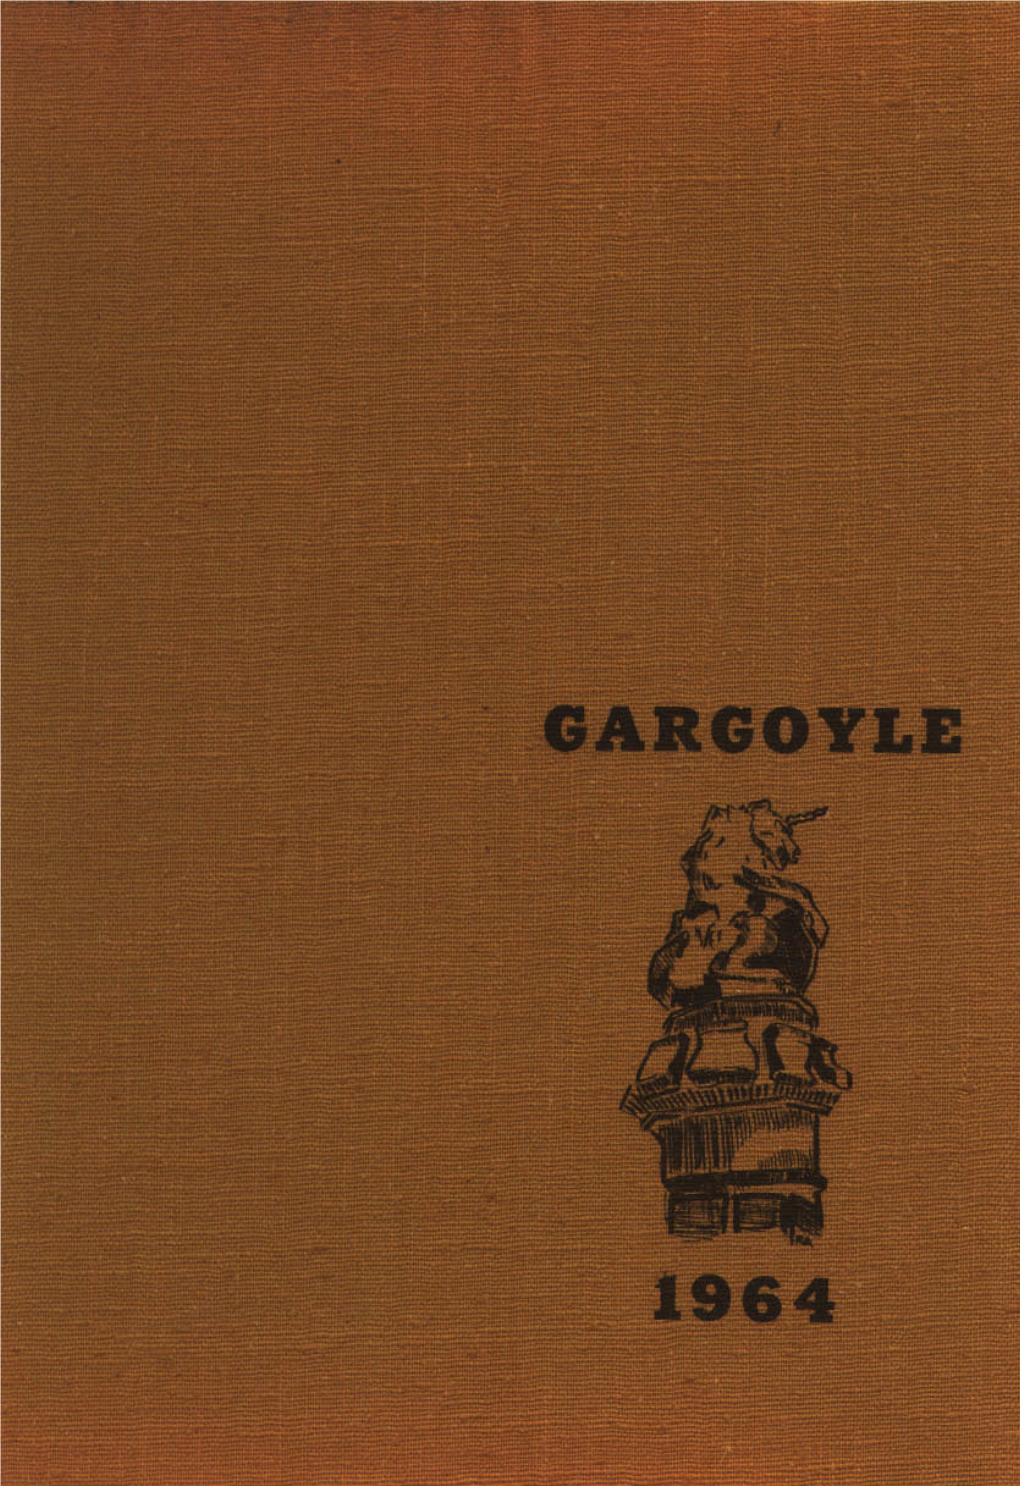 1964 Gargoyle